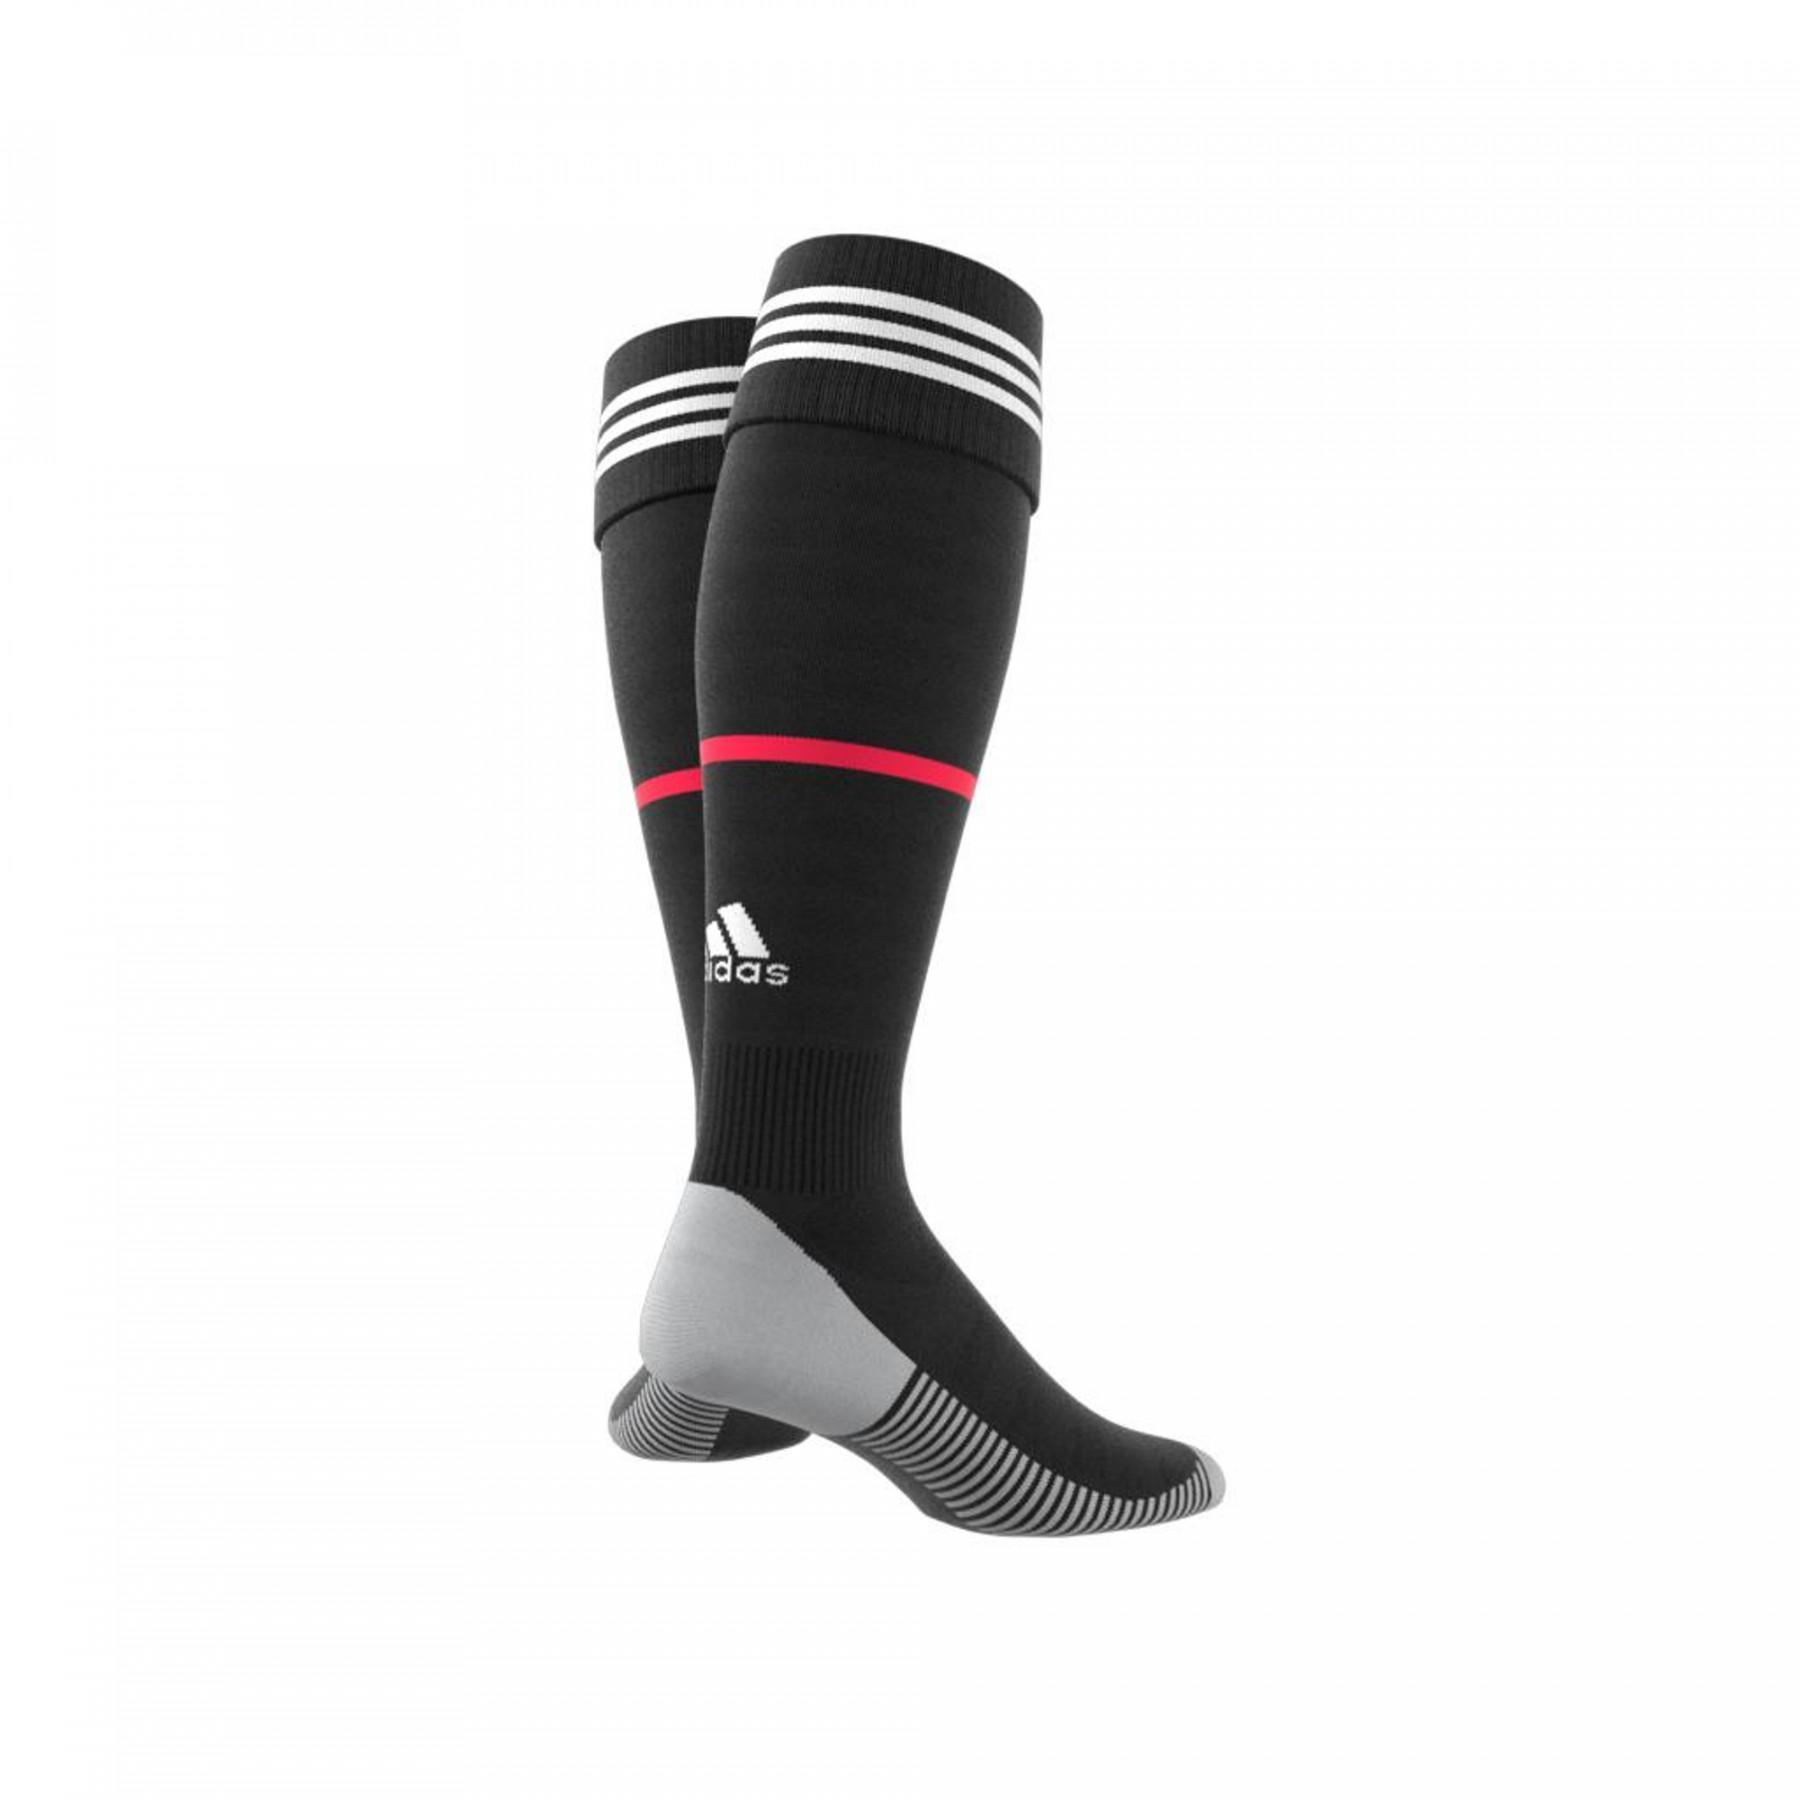 Home socks Juventus 2019/20